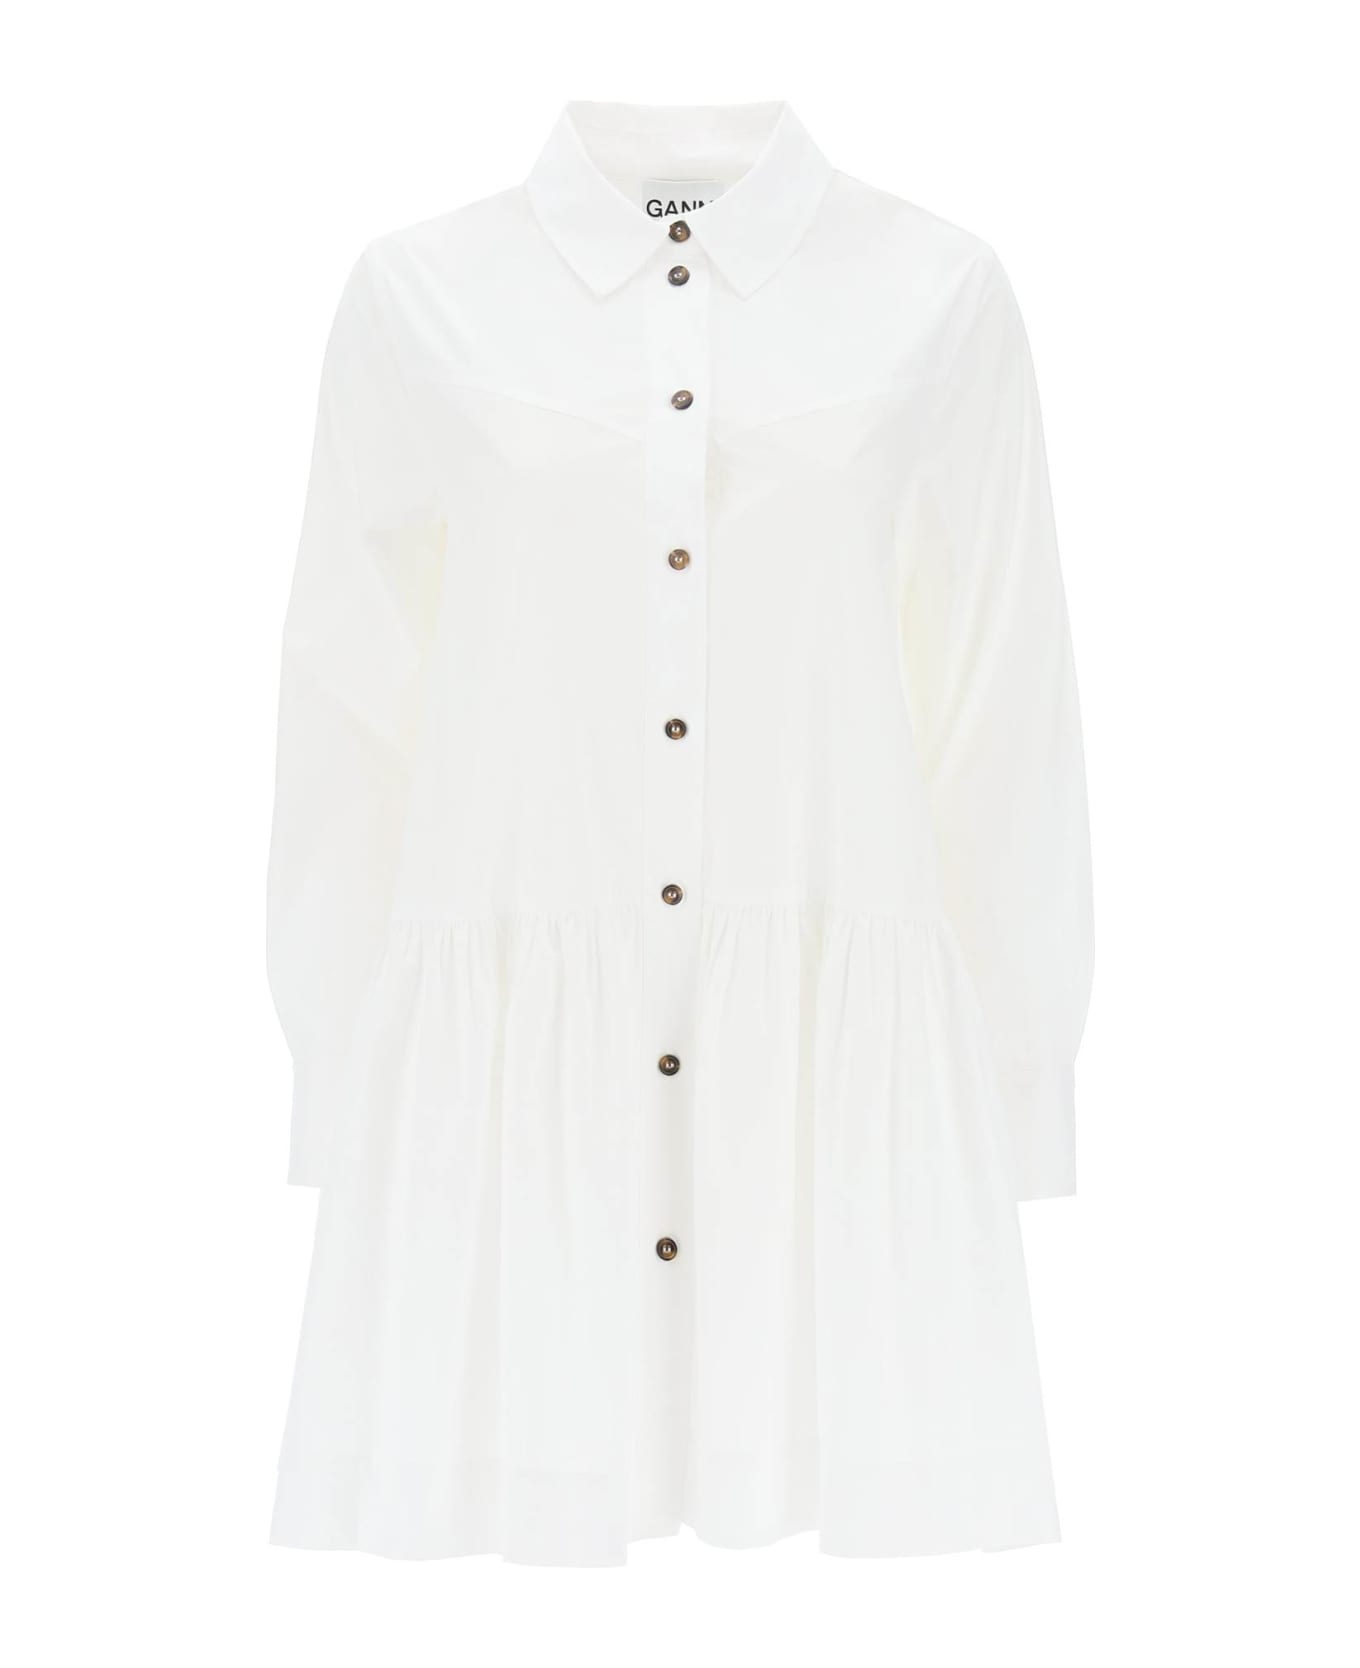 Ganni Shirt Dress - BRIGHT WHITE (White)